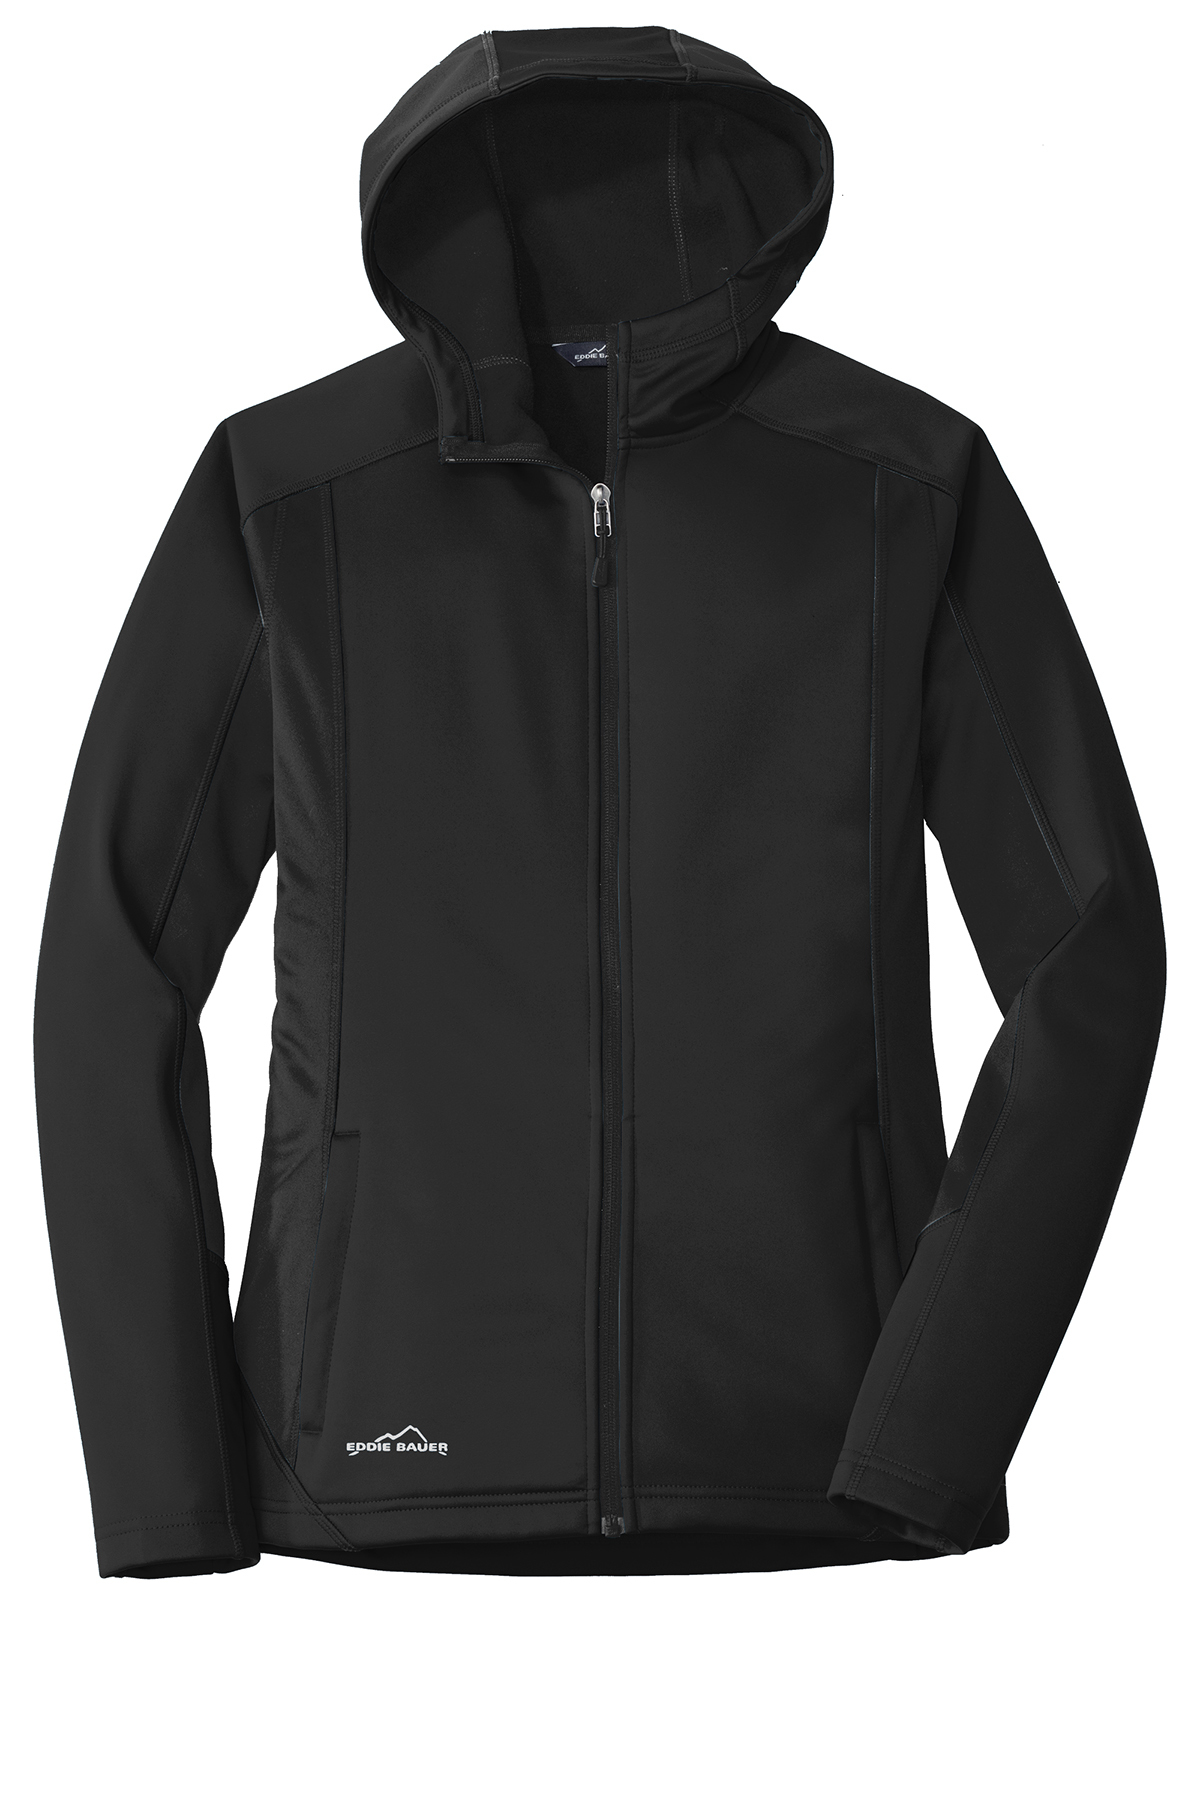 Eddie Bauer® Ladies Trail Soft Shell Jacket | Ladies/Women | Outerwear ...